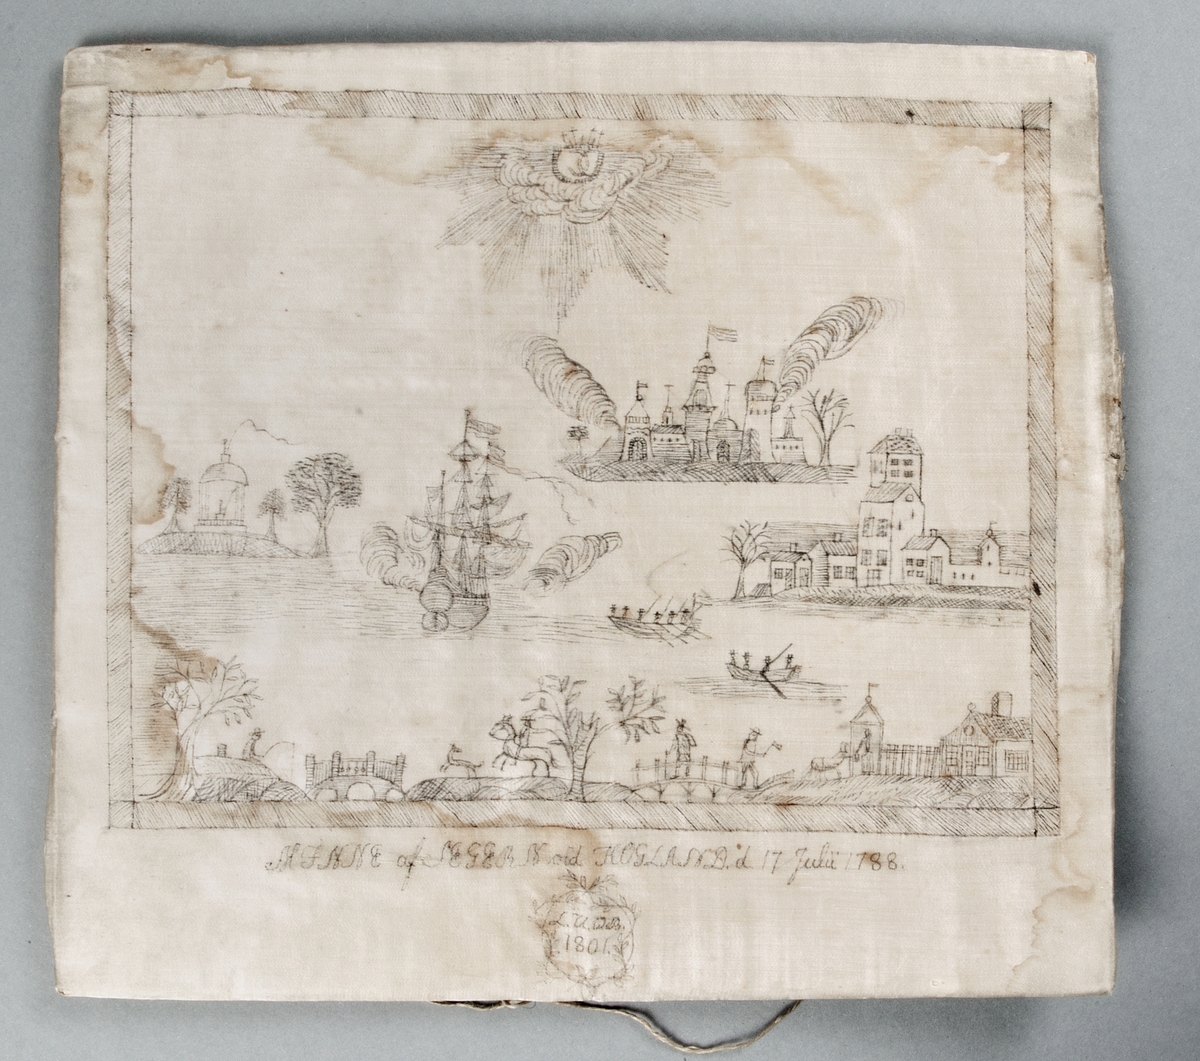 Marint landskap med krigsfartyg och byggnader, MINNE AF SEGERN VID HOGLAND D.17 JULI 1788.